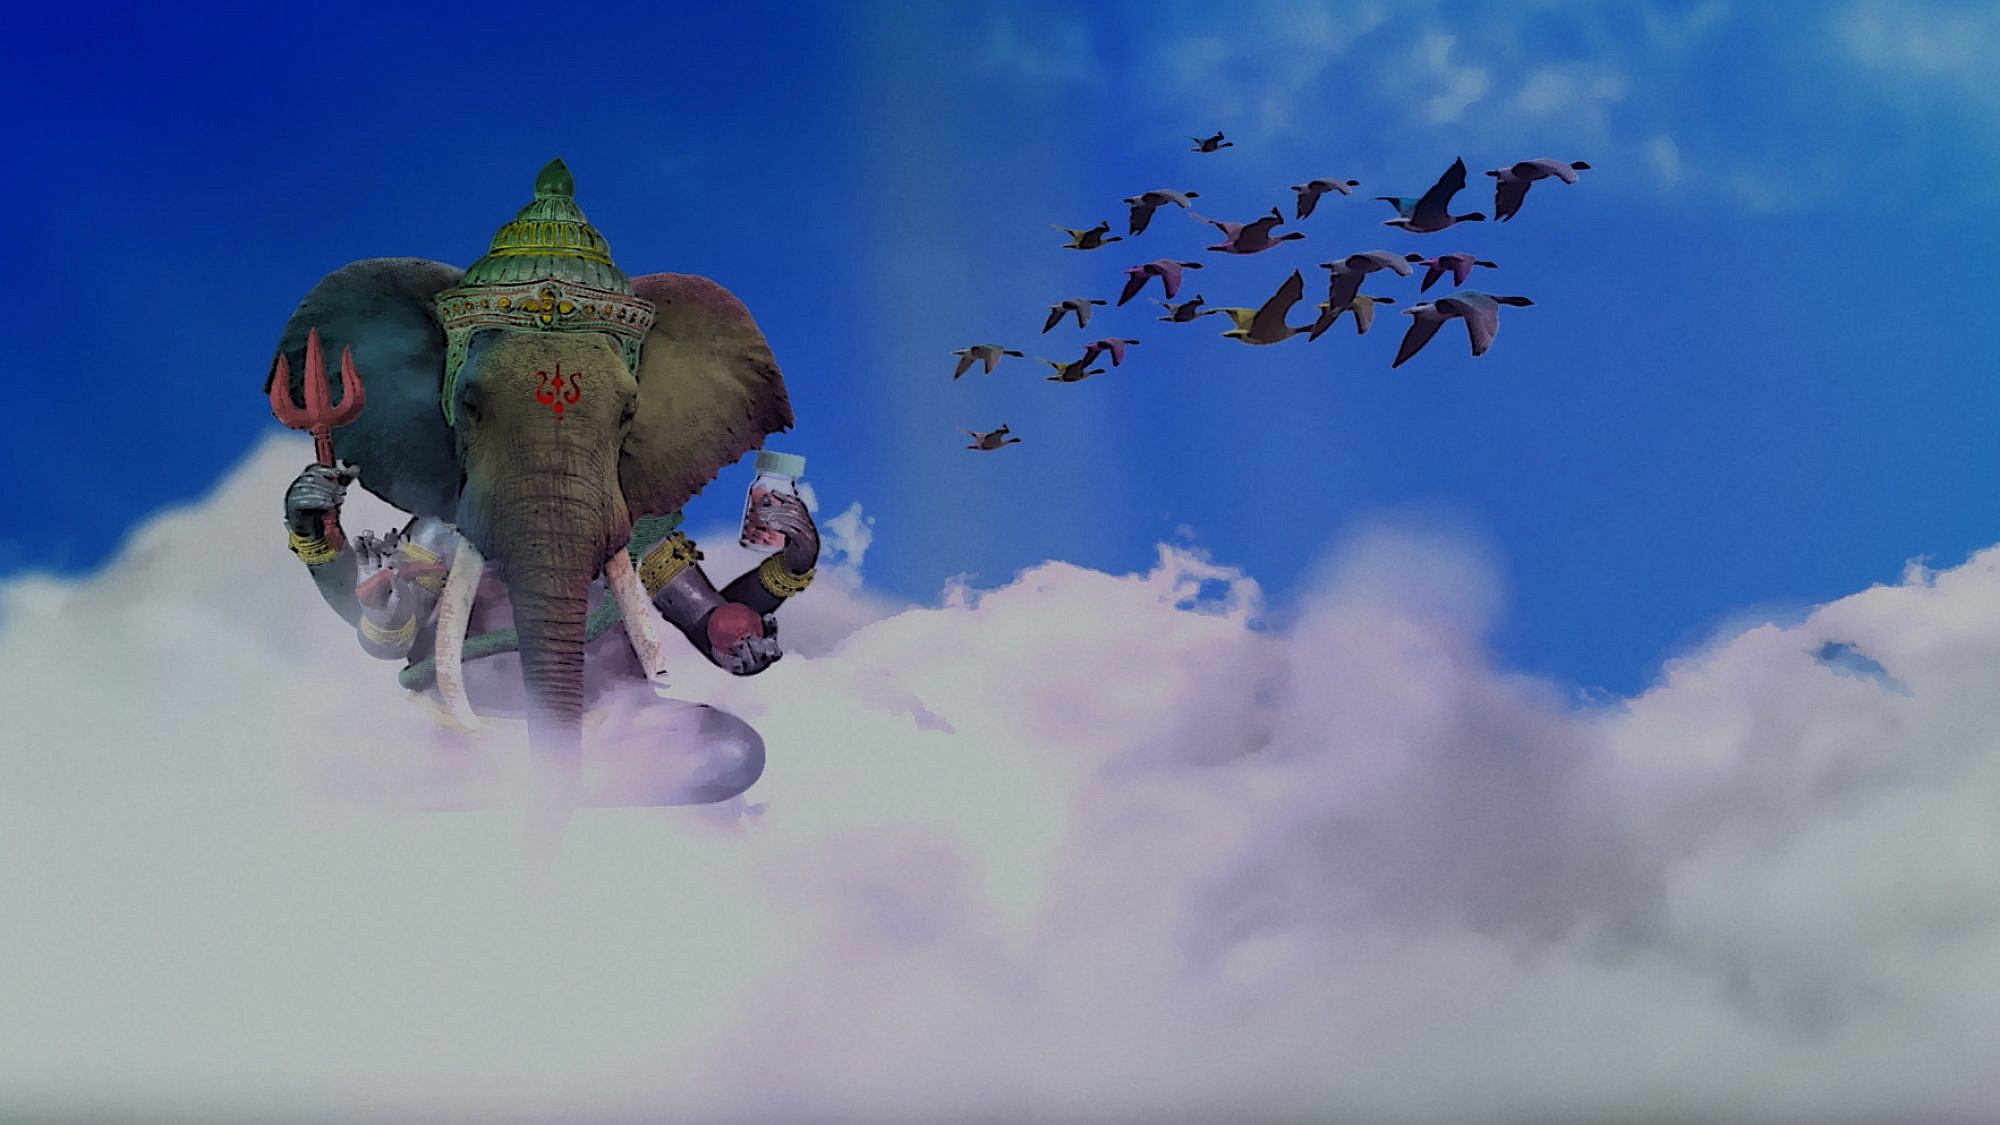 אל תחשבו על פילים ורודים. מתוך הסרט "מלך החגיגת". (צילום: באדיבות דרומהפקות)